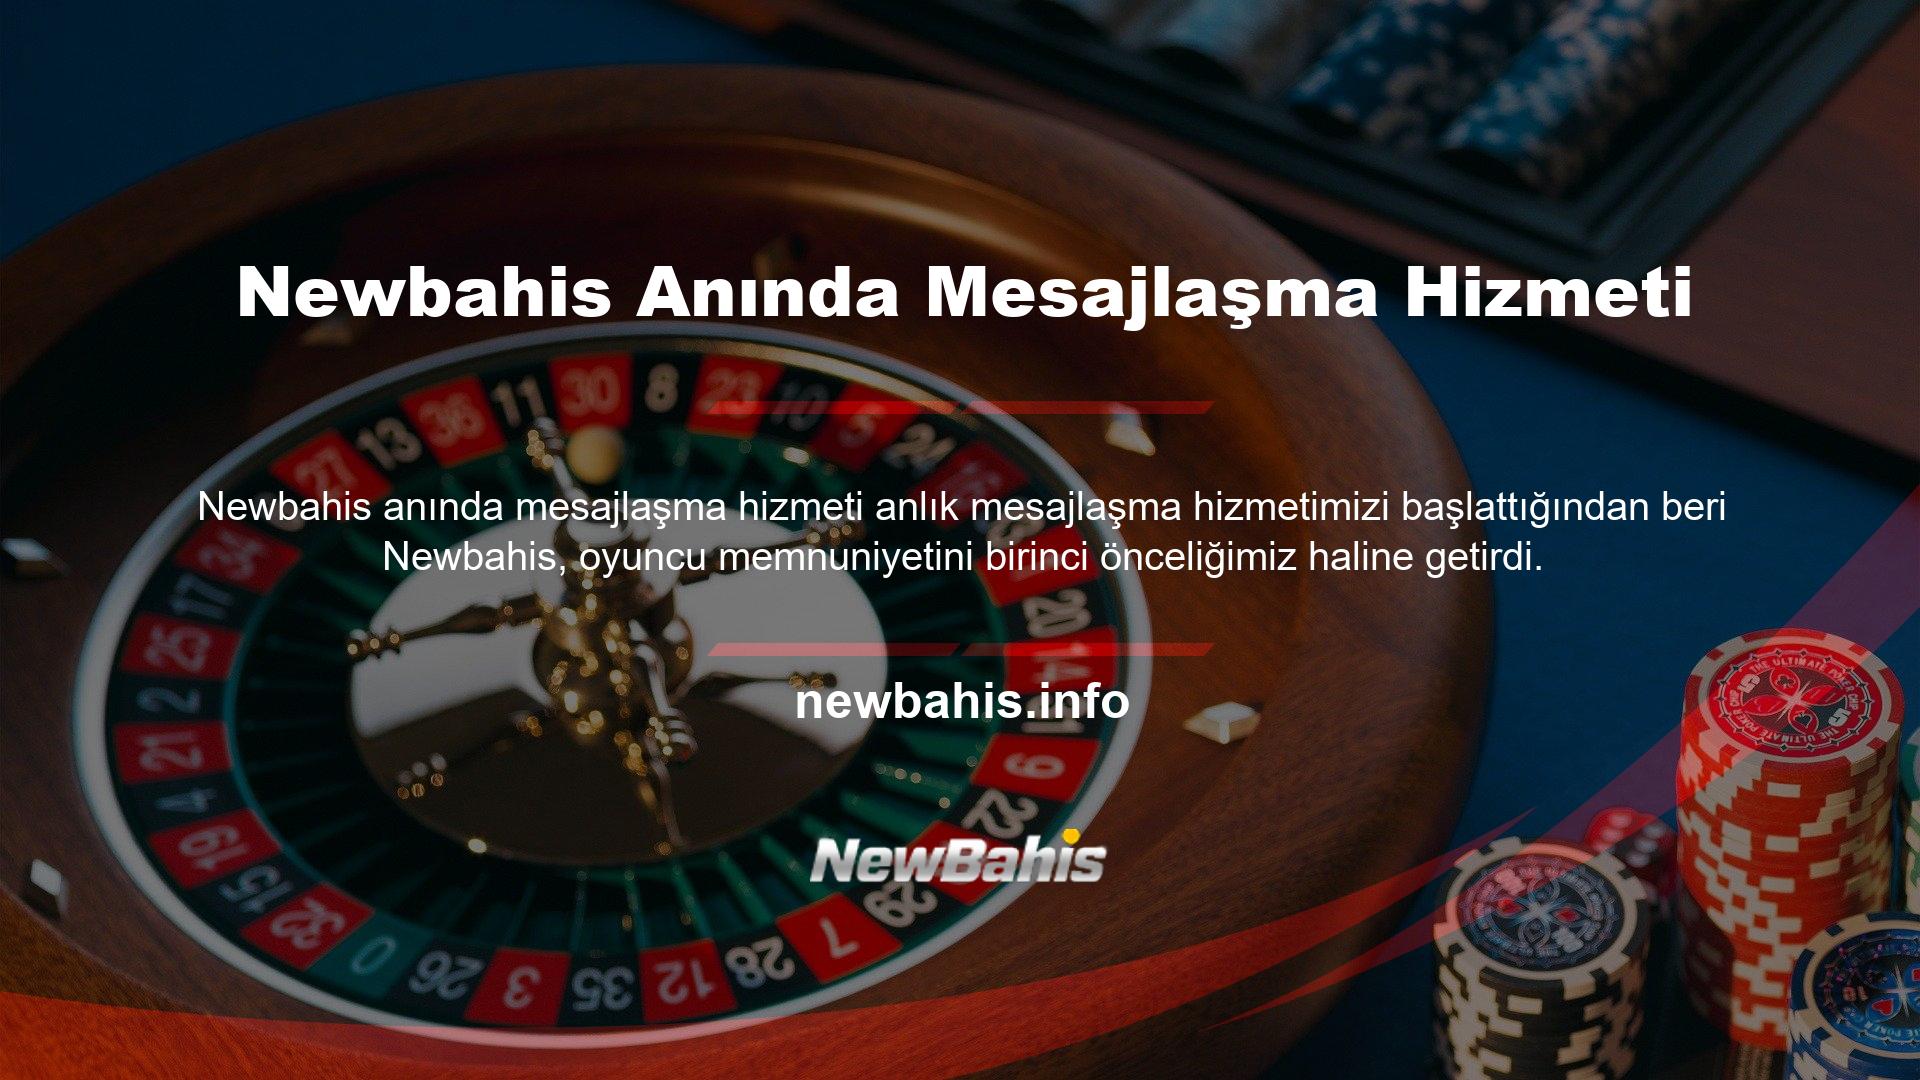 Newbahis, oyuncularıyla olan güçlü bağı ve mükemmel hizmet felsefesi ve tutumu nedeniyle en popüler casino sitelerinden biridir